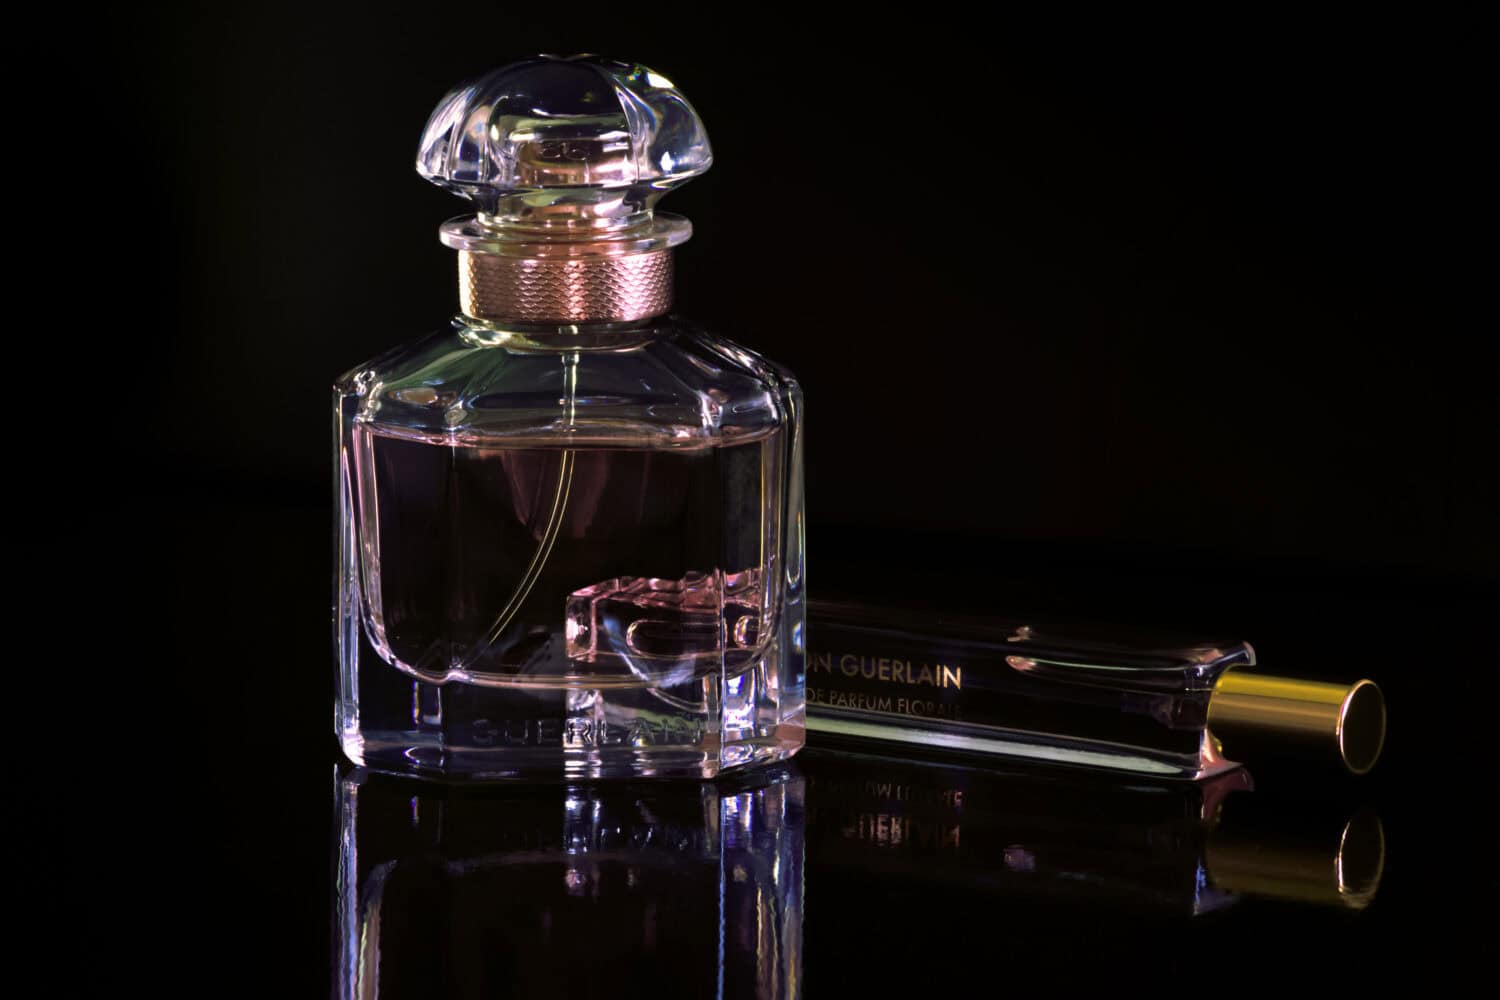 big and little Guerlain perfume bottles packshot